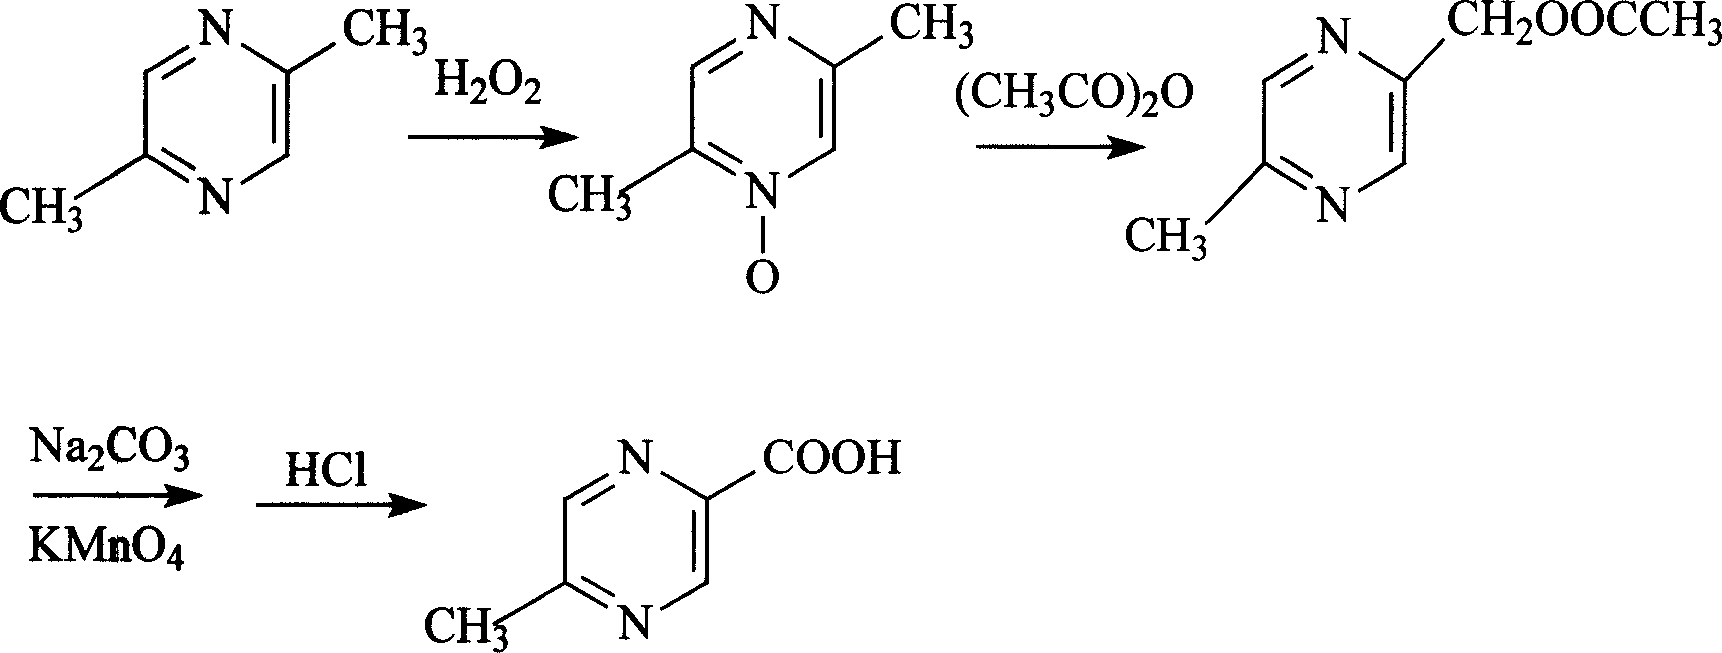 Process of selective synthesizing 5-methyl pyrazine-2-carboxylic acid using 2,5-dimethyl pyrazine